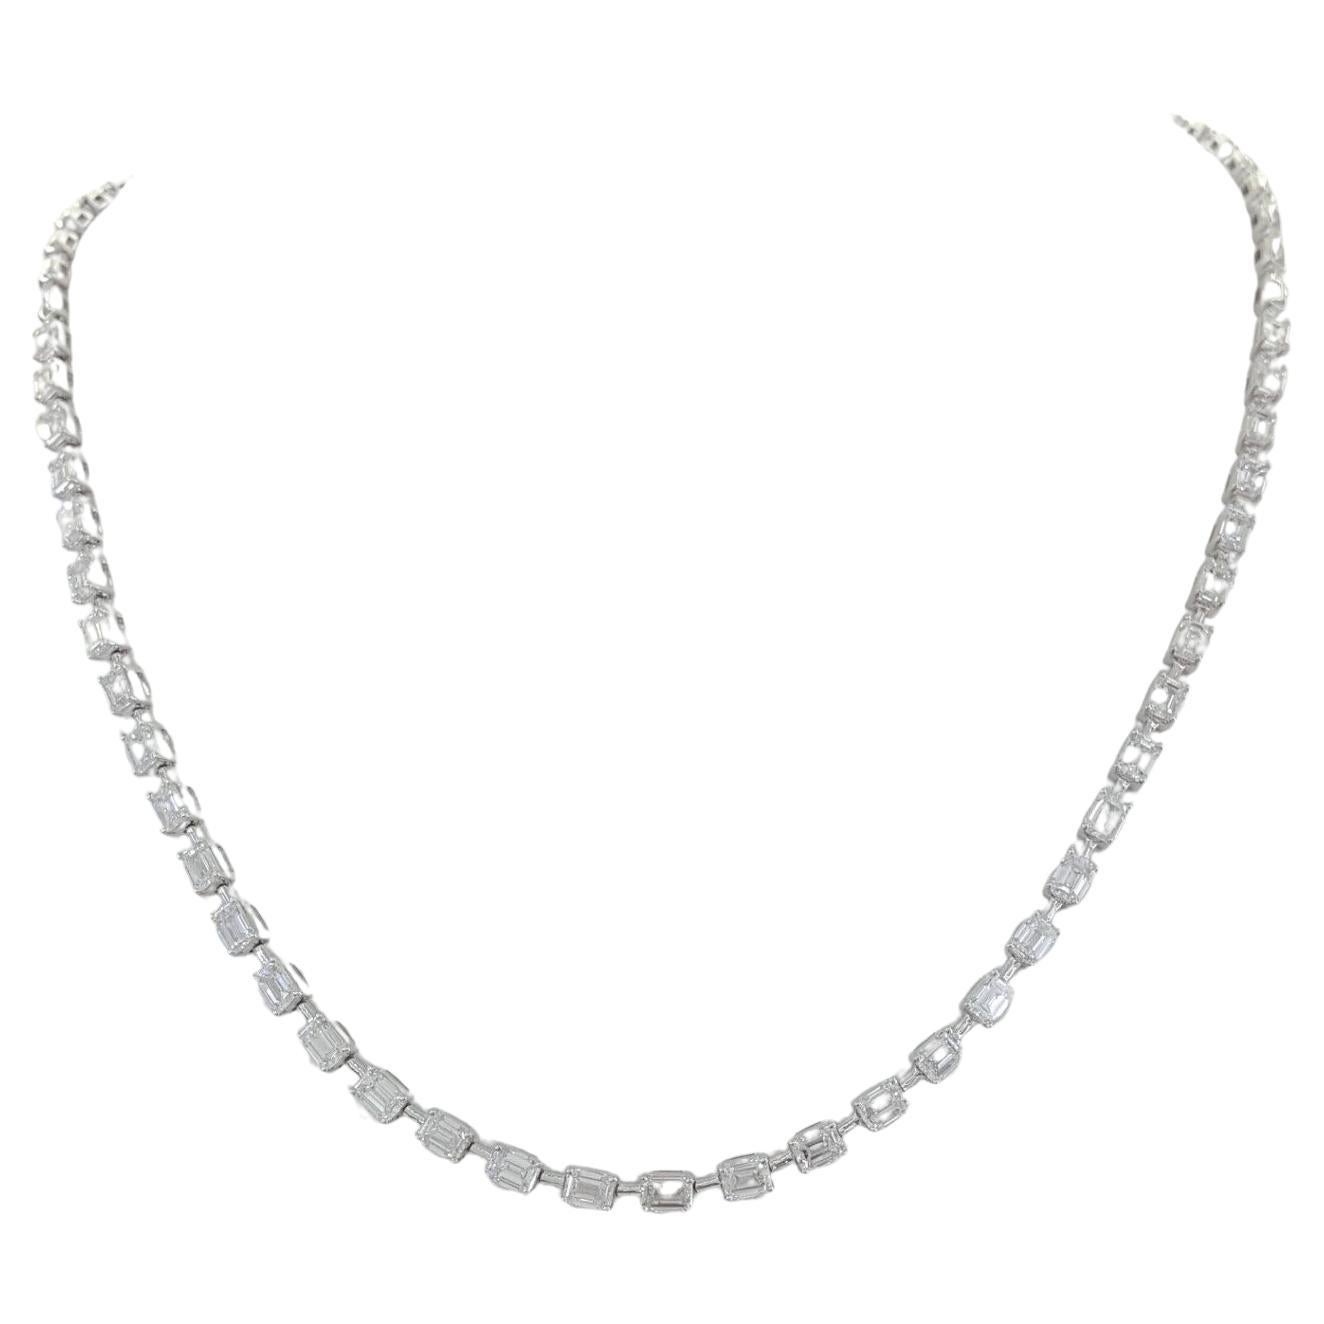  7 Carat Emerald Brilliant Cut Diamond Line Necklace  For Sale 1